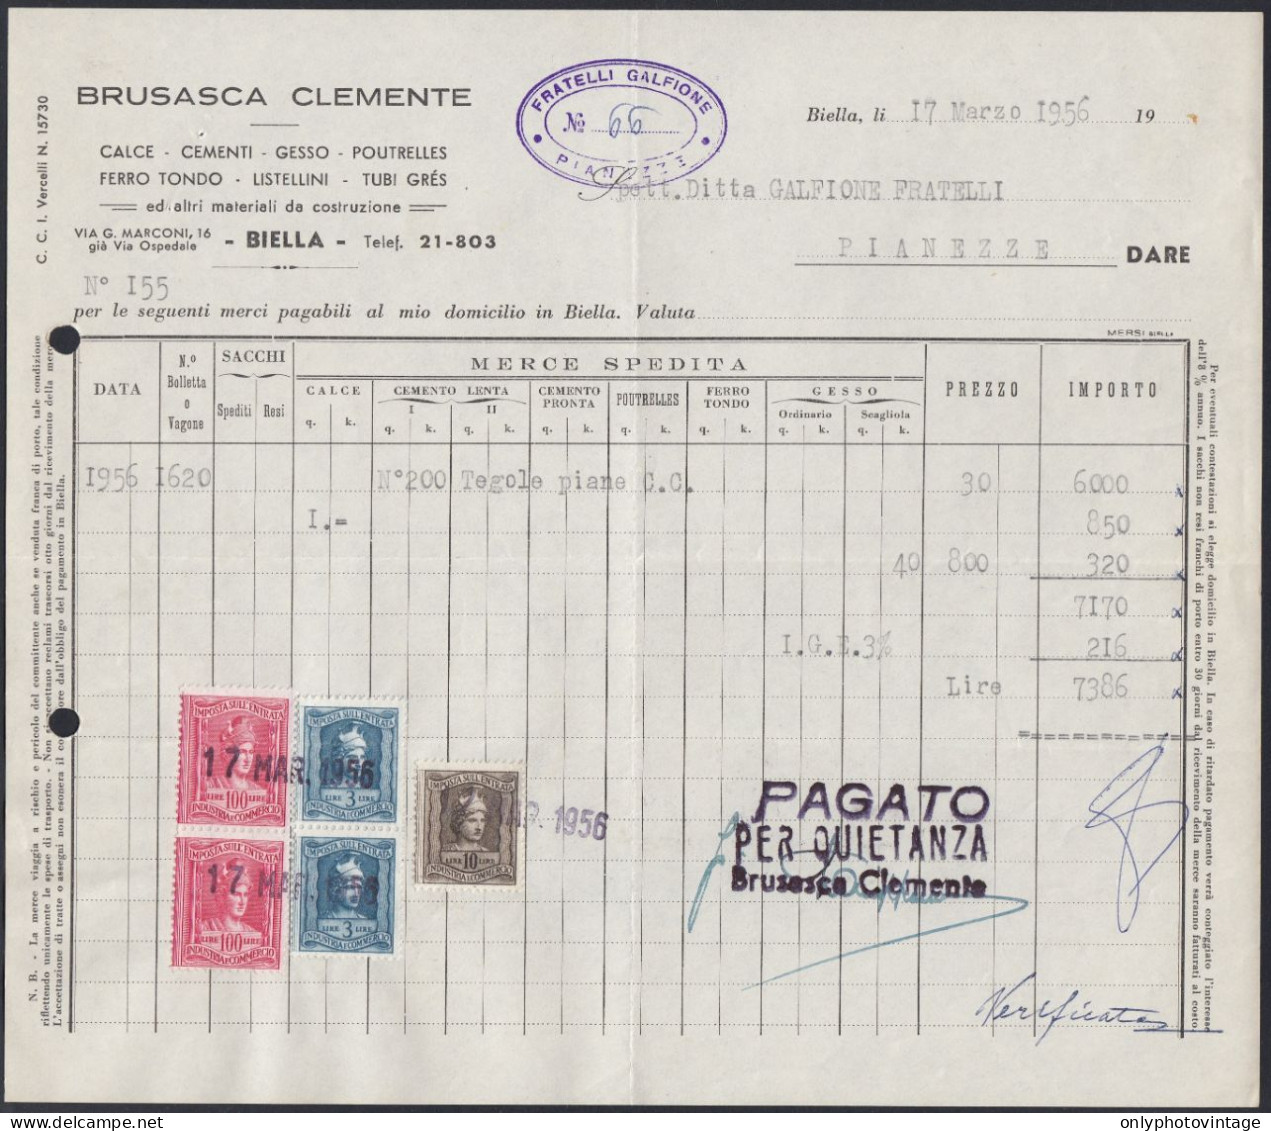 Biella 1956 - Brusasca Clemente - Materiale Da Costruzione - Fattura - Italie